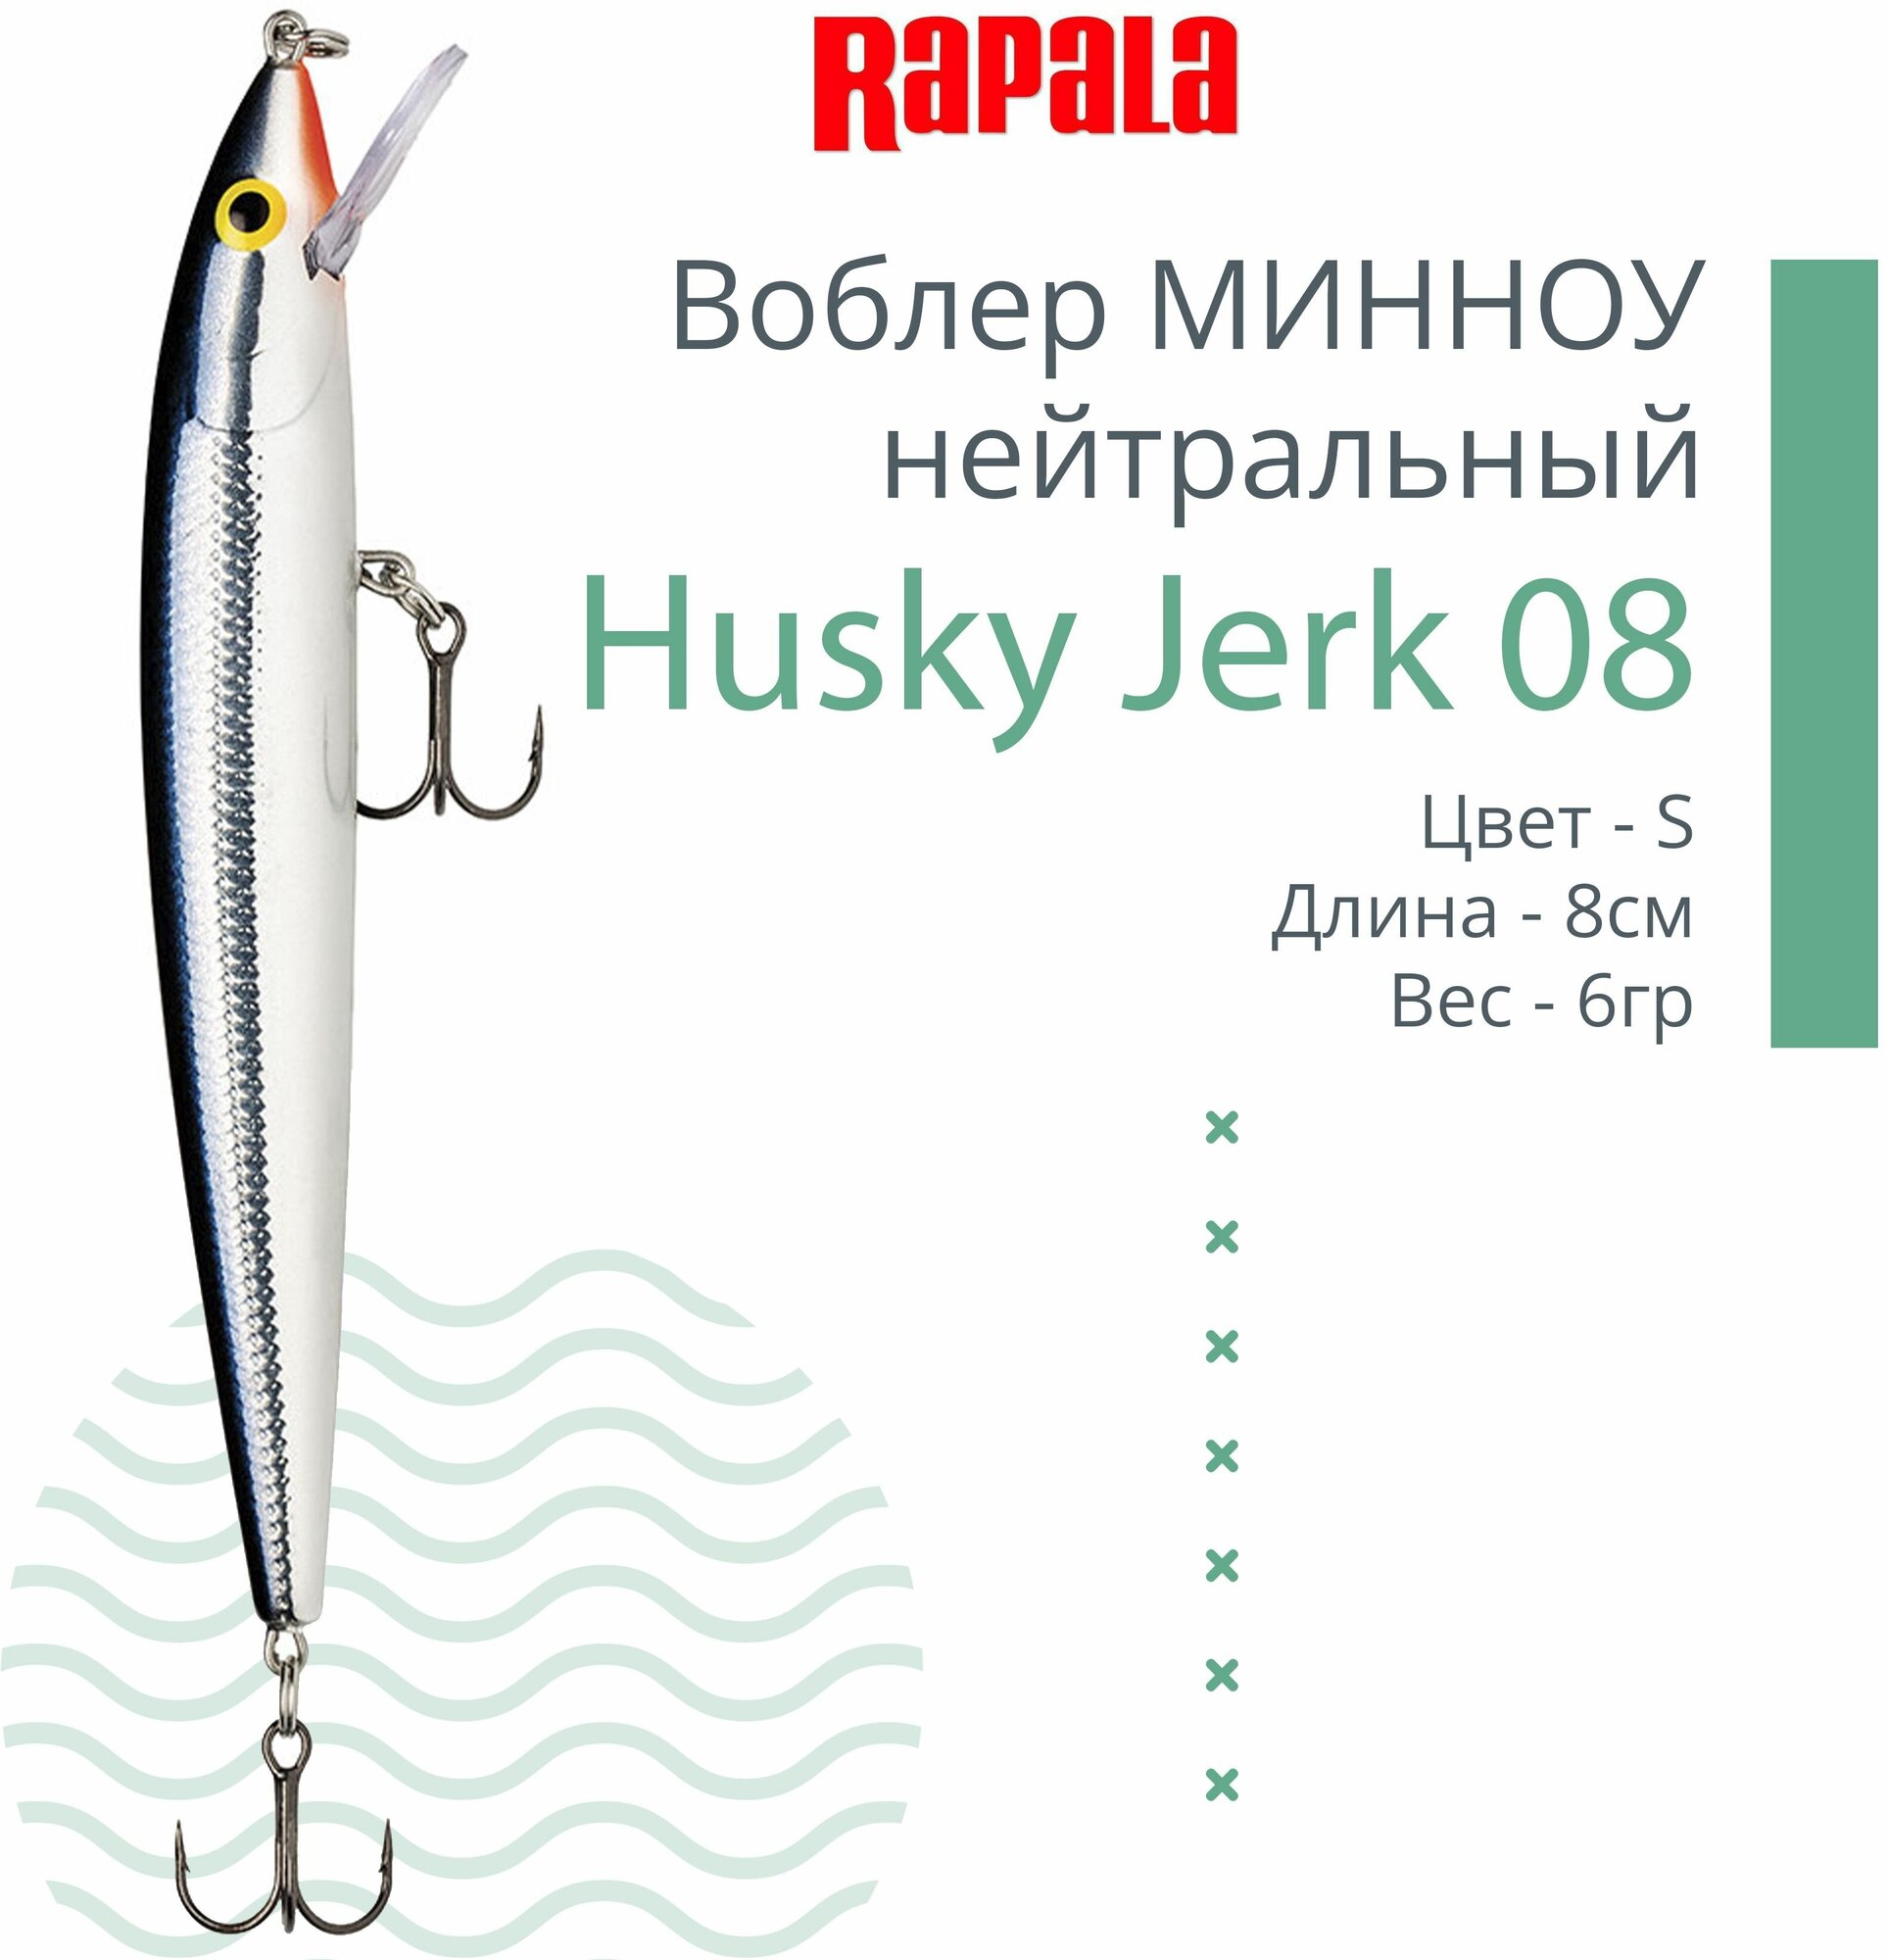 Воблер для рыбалки RAPALA Husky Jerk 08, 8см, 6гр, цвет S, нейтральный